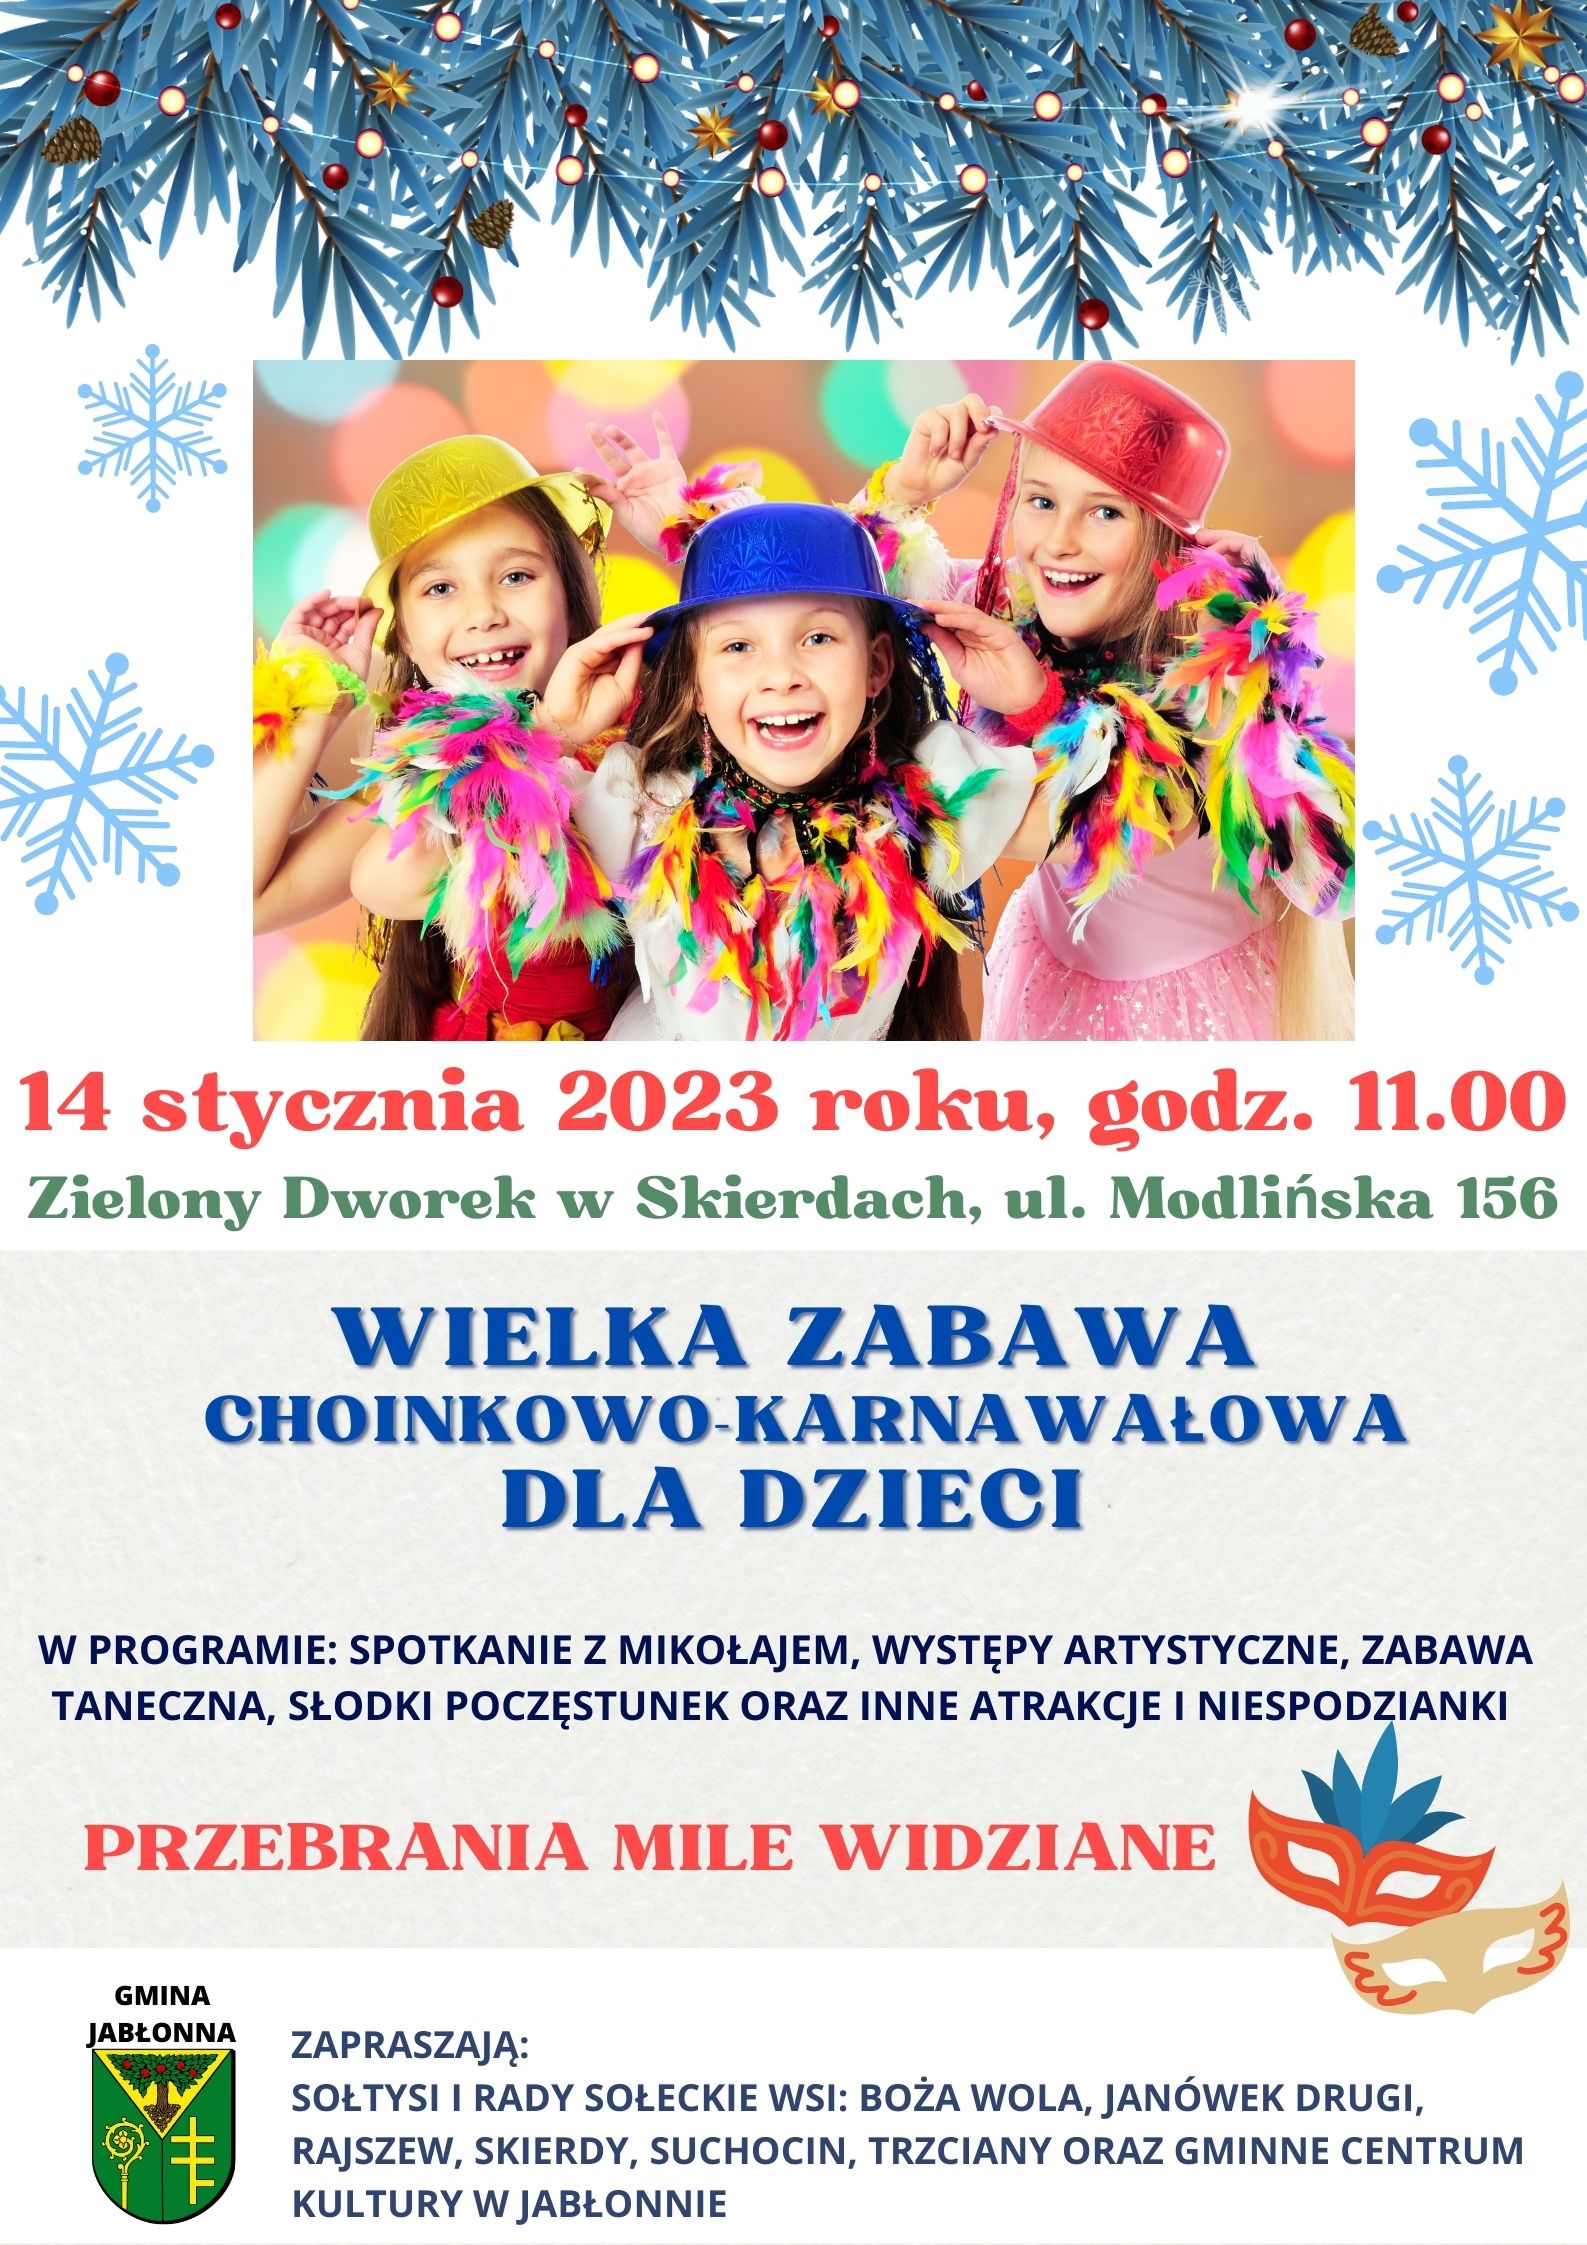 Plakat informujący o zabawie choinkowo-karnawałowej dla dzieci wsi zachodnich